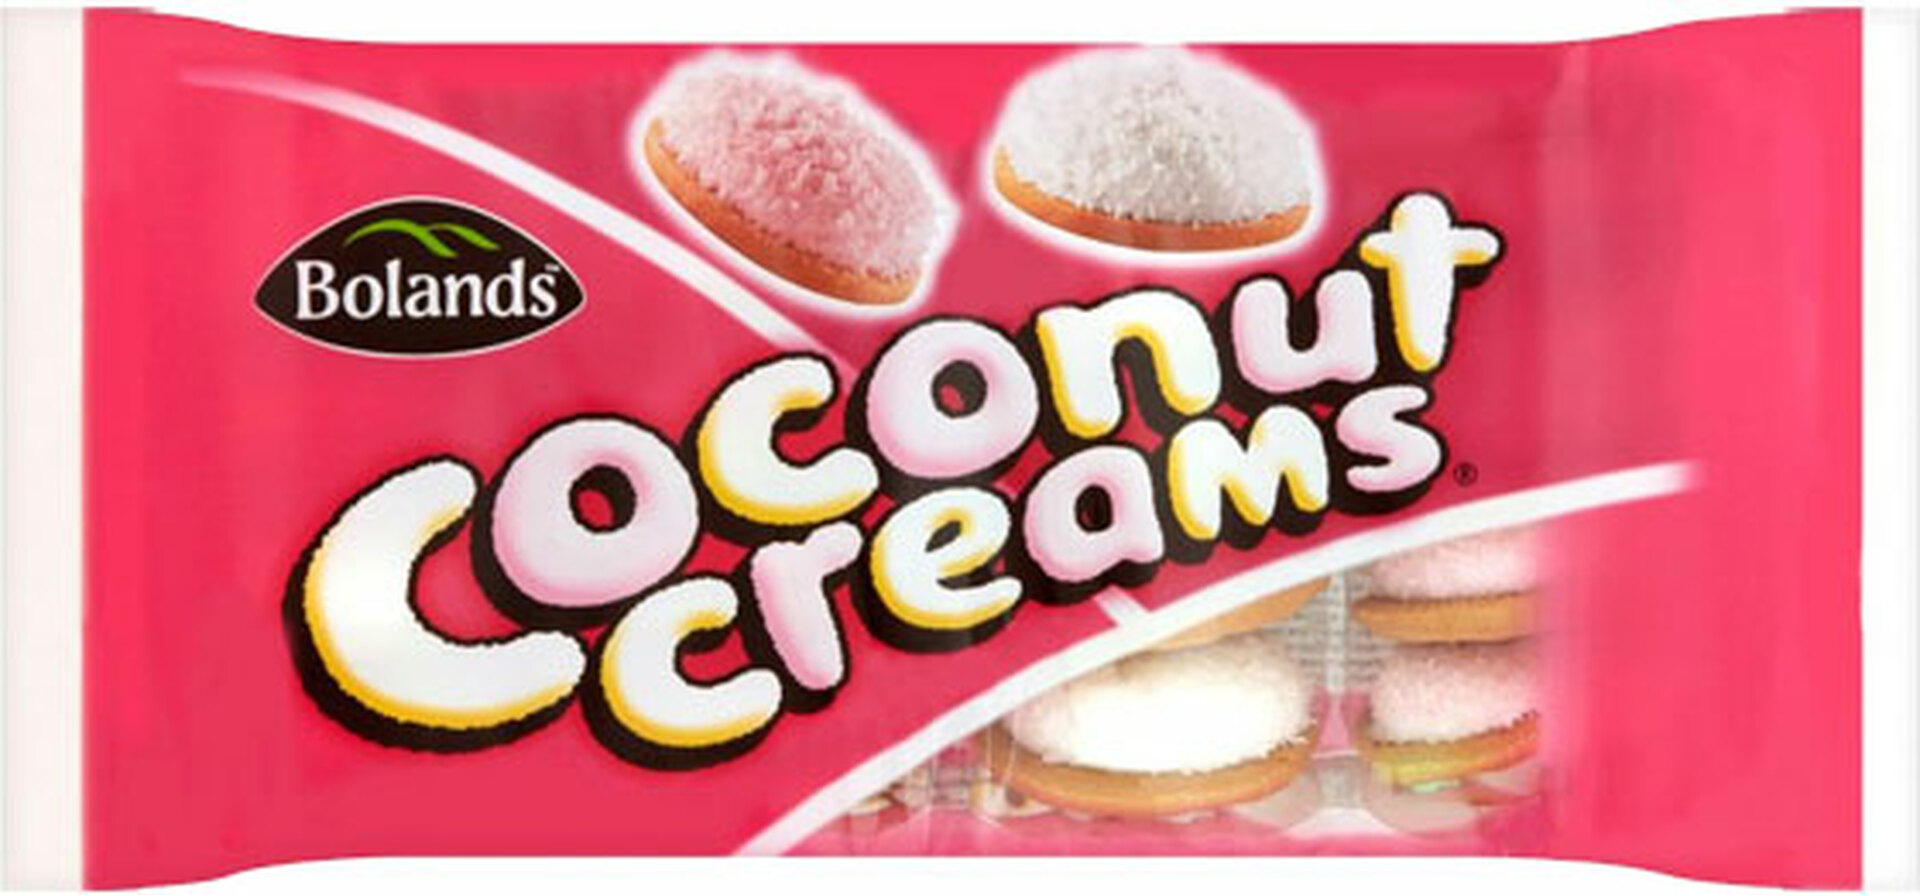 Bolands Coconut Creams - 7.56oz (200g)